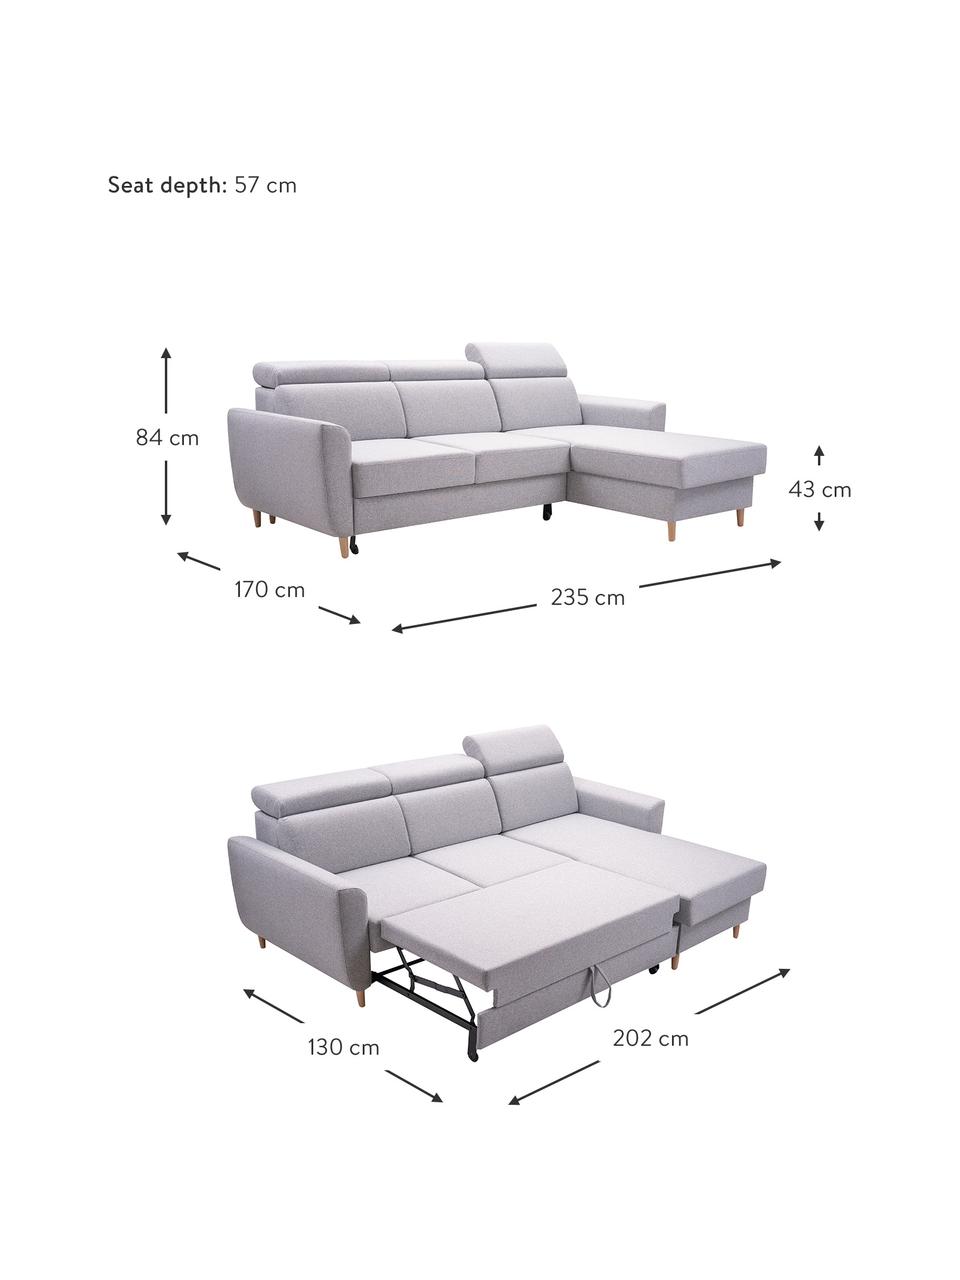 Sofa narożna z funkcją spania i miejscem do przechowywania Gusto (4-osobowa), Tapicerka: 100% poliester, Jasny szary, S 235 x G 170 cm